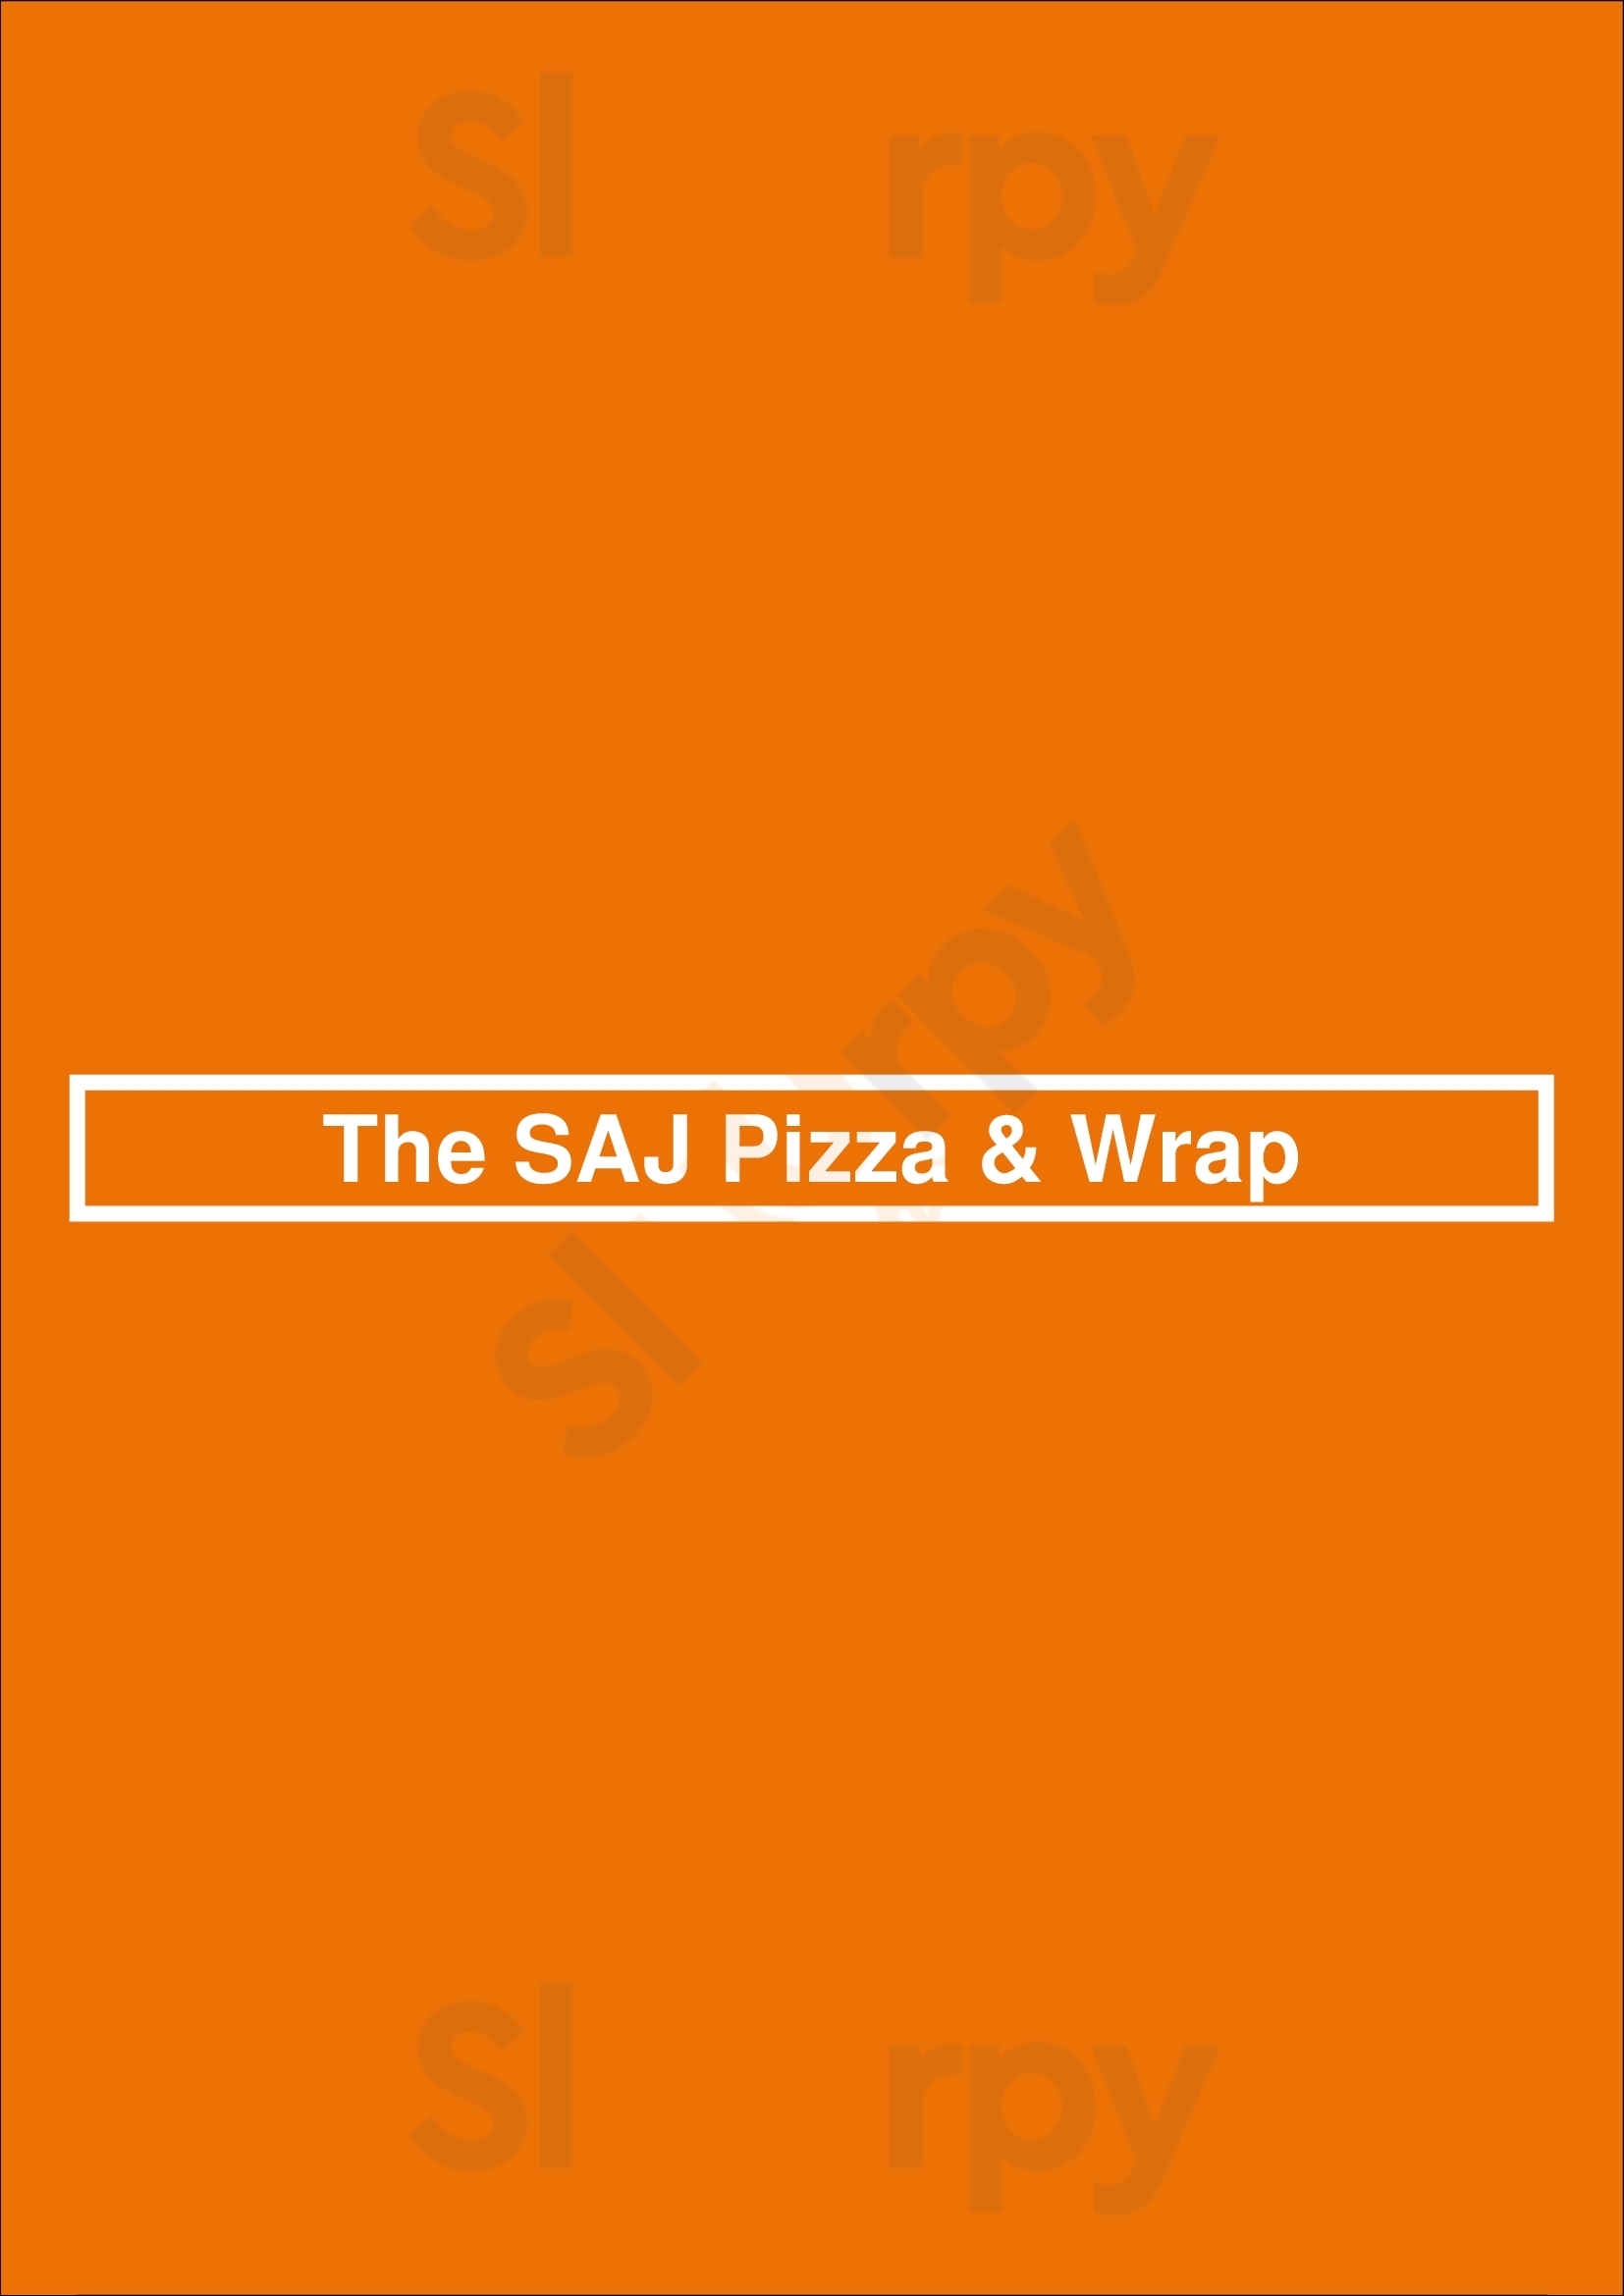 The Saj Pizza & Wrap Toronto Menu - 1